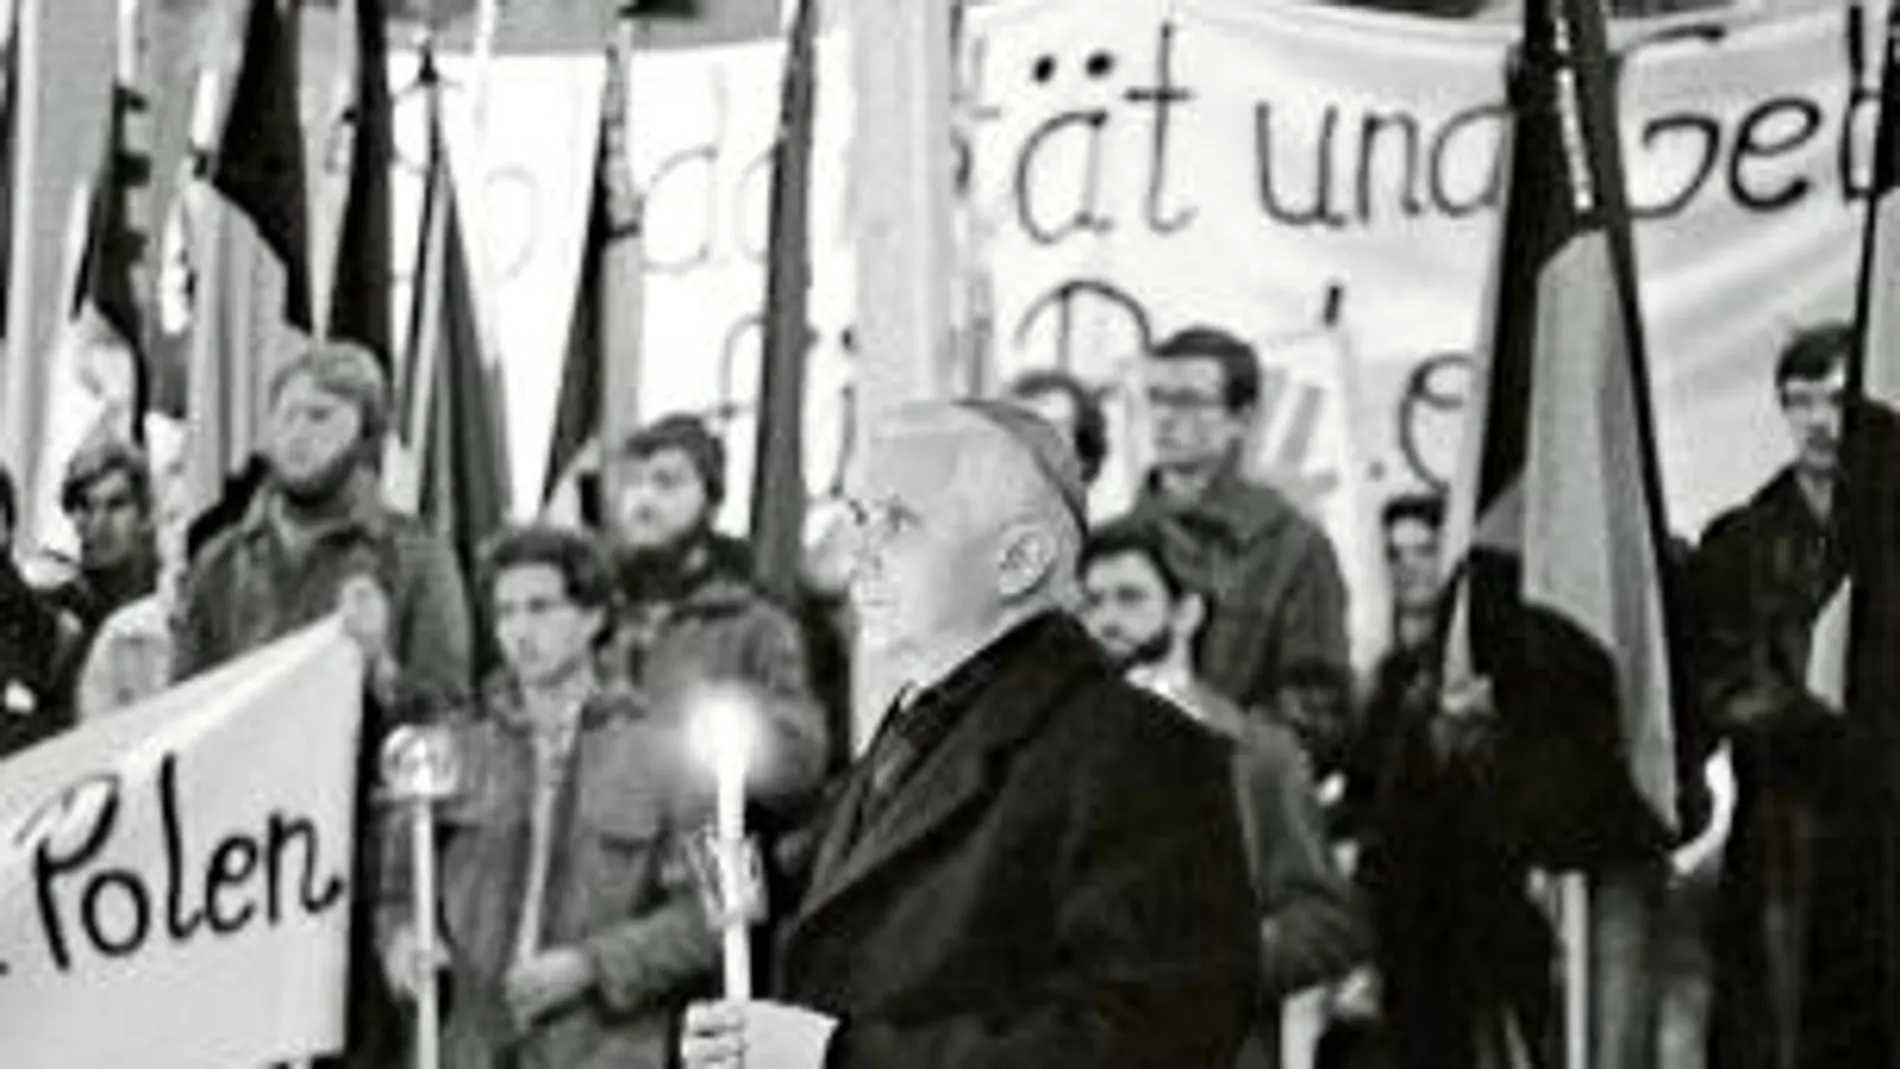 El 24 de marzo de 1977 Ratzinger fue consagrado arzobispo de Múnich y Freising y como tal presidió numerosas vigilias de oración, como la de la imagen, en 1981, por los perseguidos en Polonia